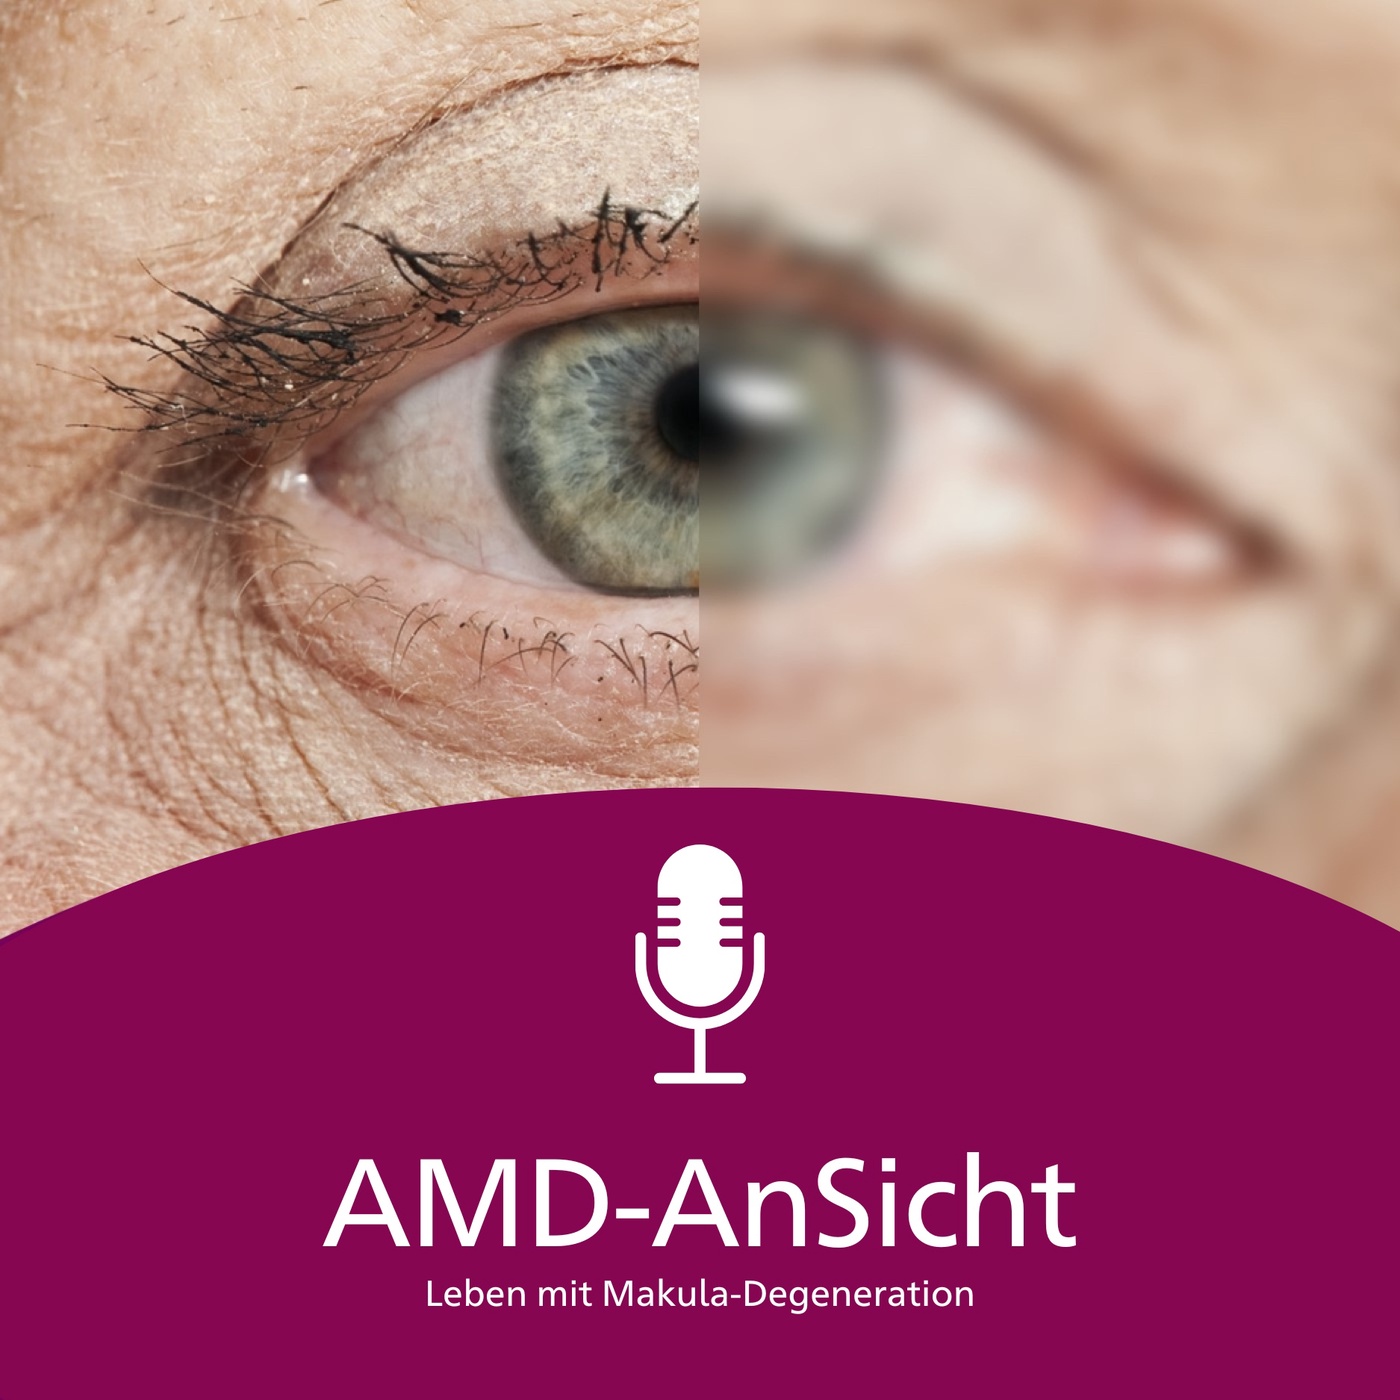 AMD-AnSicht - Leben mit Makuladegeneration